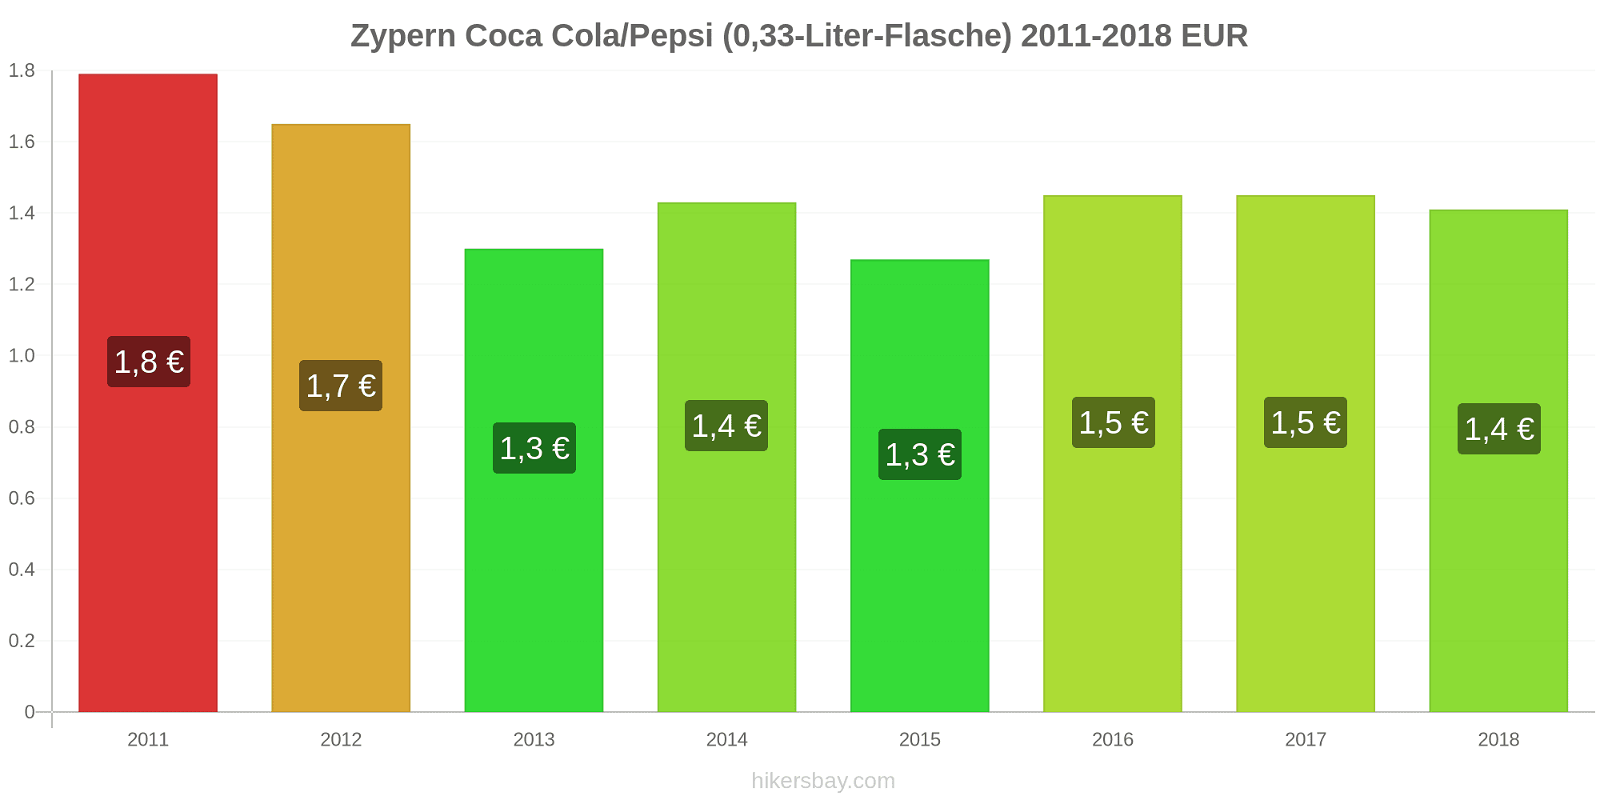 Zypern Preisänderungen Coke/Pepsi (0,33-Liter-Flasche) hikersbay.com